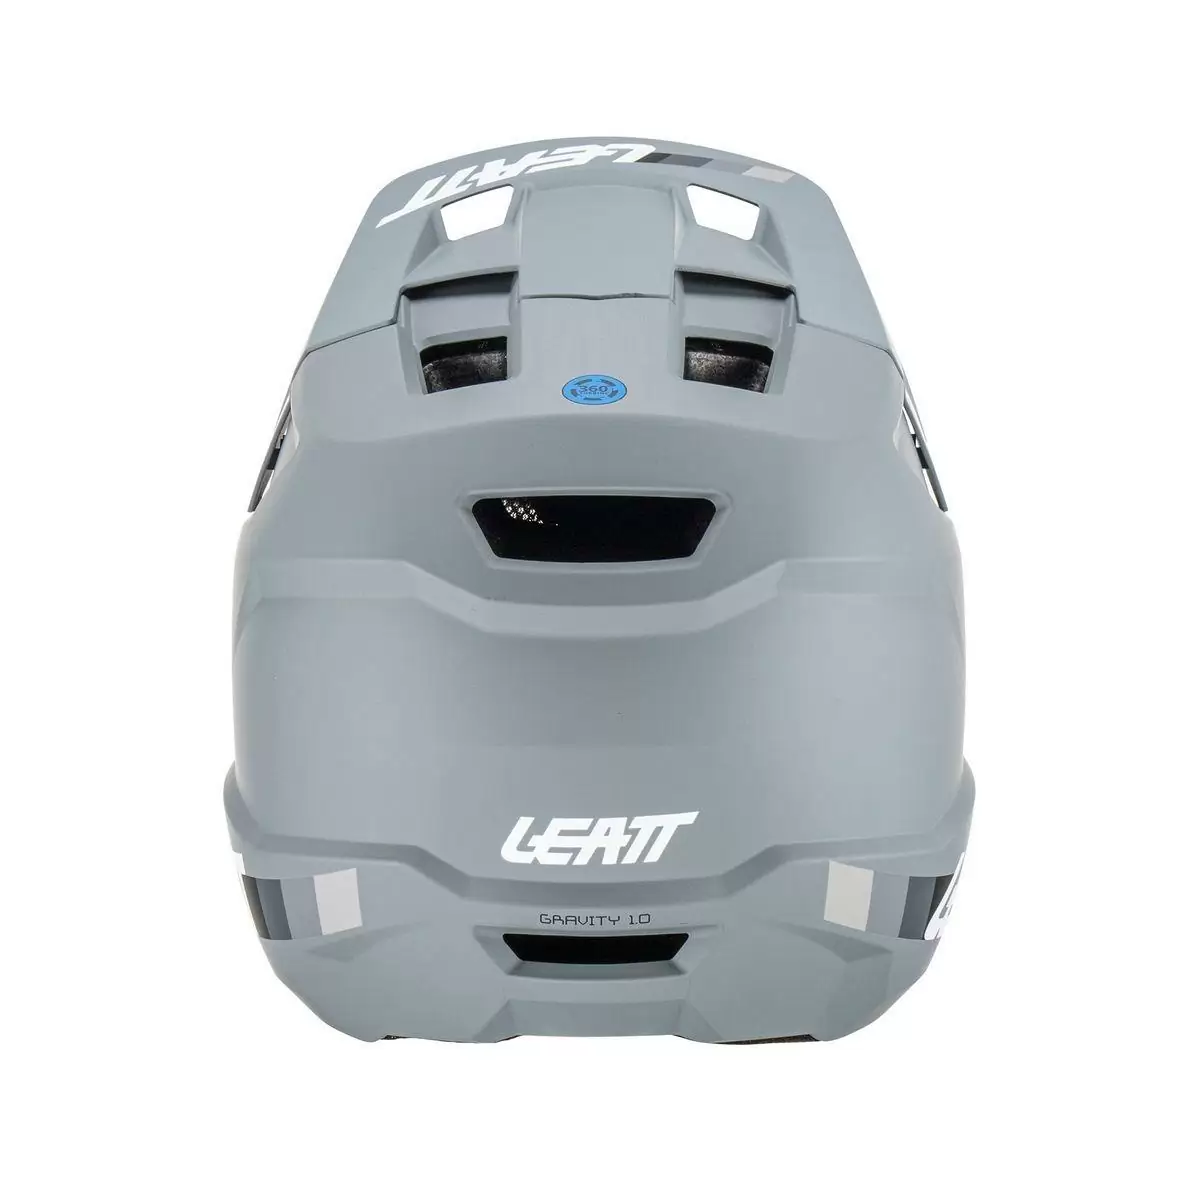 Gravity 1.0 MTB Fullface Helmet Grey Size XXL (63-64cm) #4